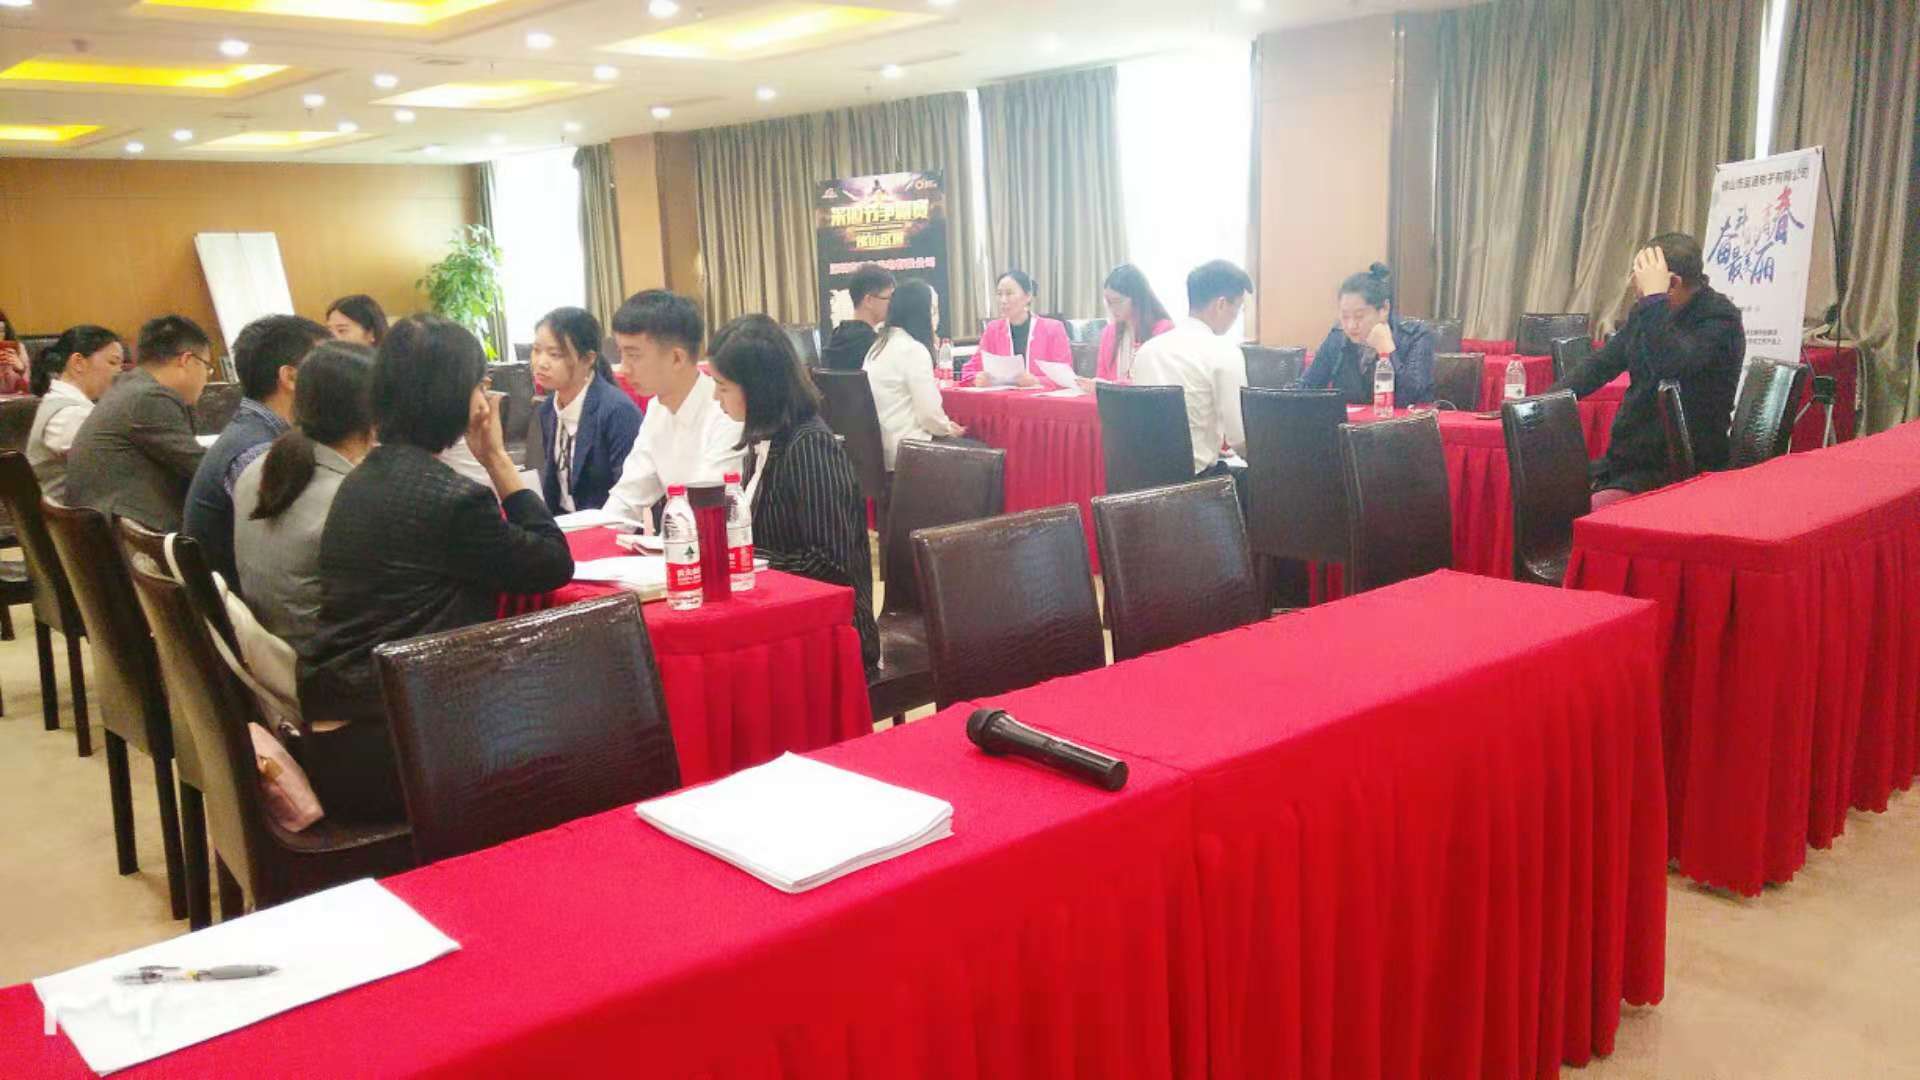 郑州跨境电商培训